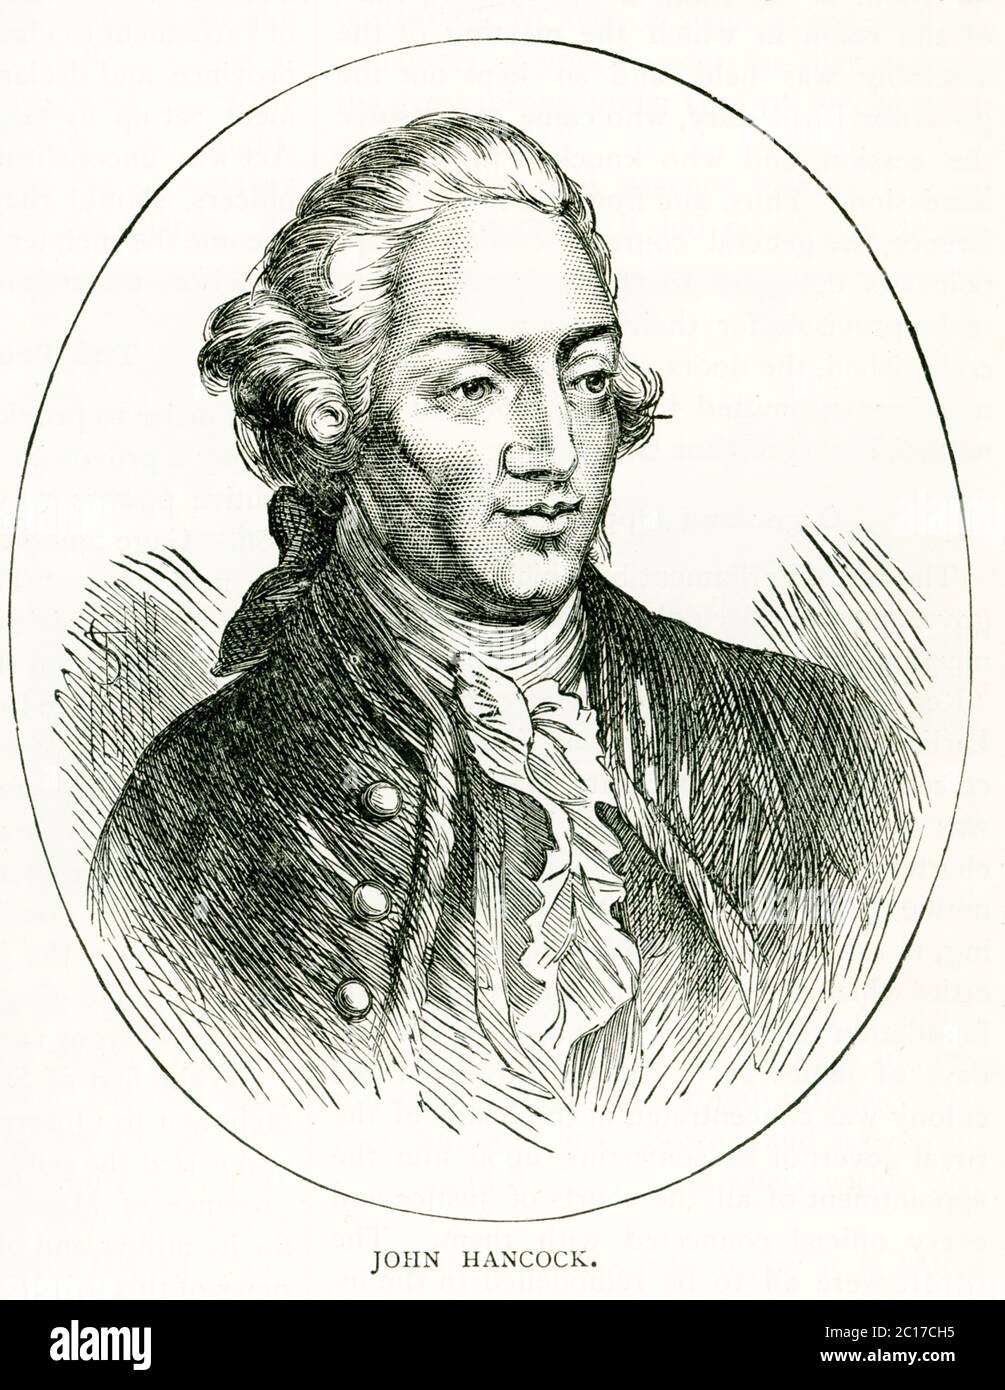 John Hancock, patriota rivoluzionario americano (1737–1793), fu un firmatario della Dichiarazione di indipendenza. Promosse fortemente la resistenza al governo britannico e fu presidente del Congresso continentale dal 1775 al 1777. Foto Stock